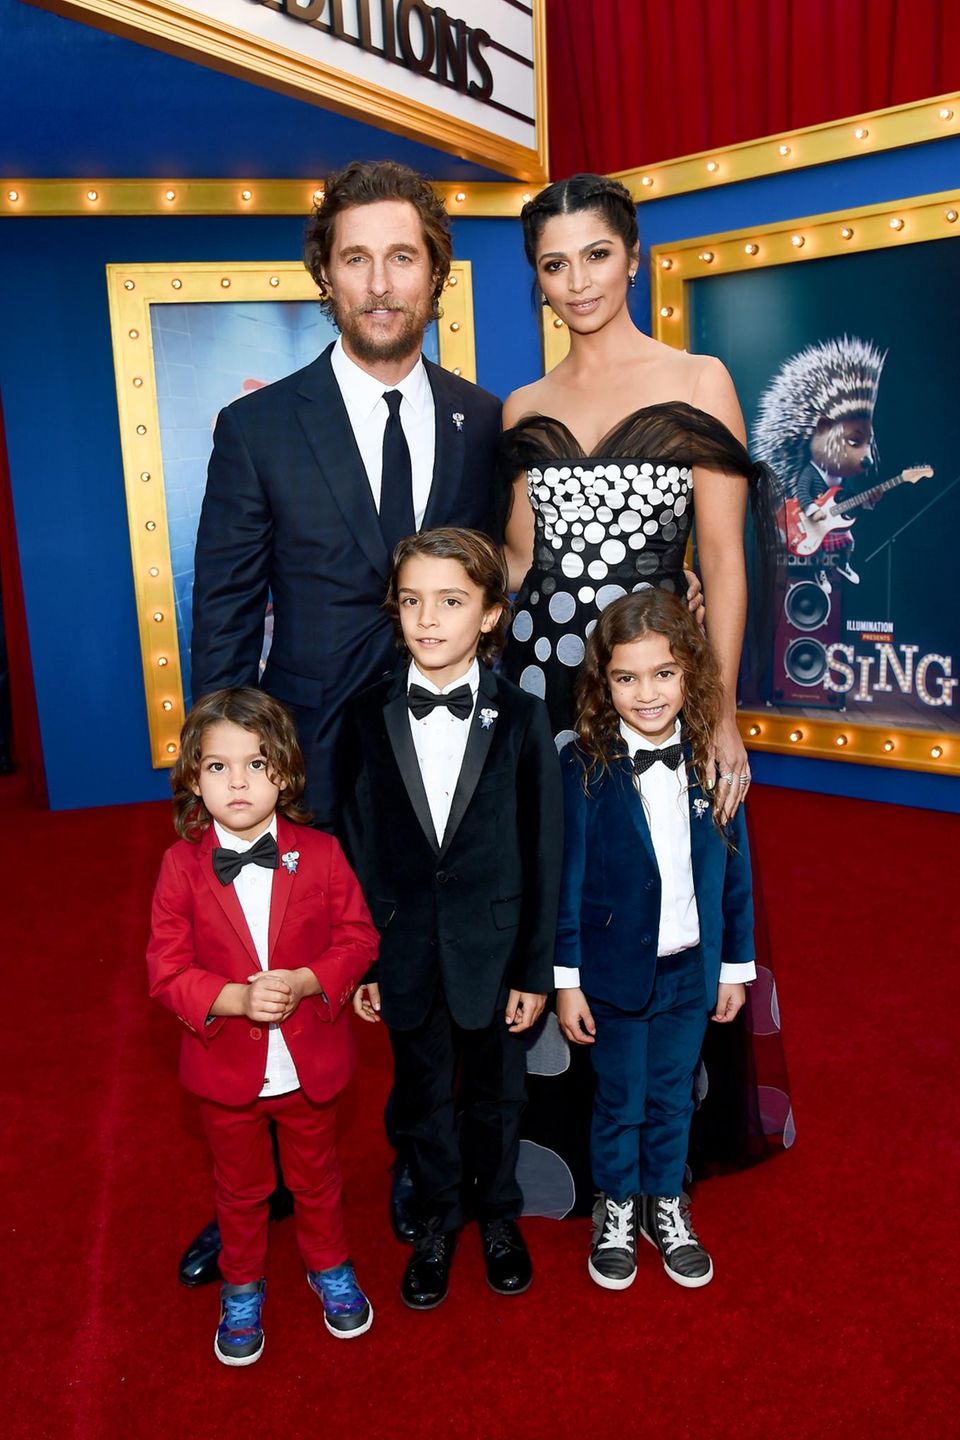 3. Dezember 2016  Filmspaß für die ganze Familie: Matthew McConaughey und Camila Alves besuchen mit ihren stylischen Kids Livingston, Levi und Vida die "Sing"-Premiere in Los Angeles.